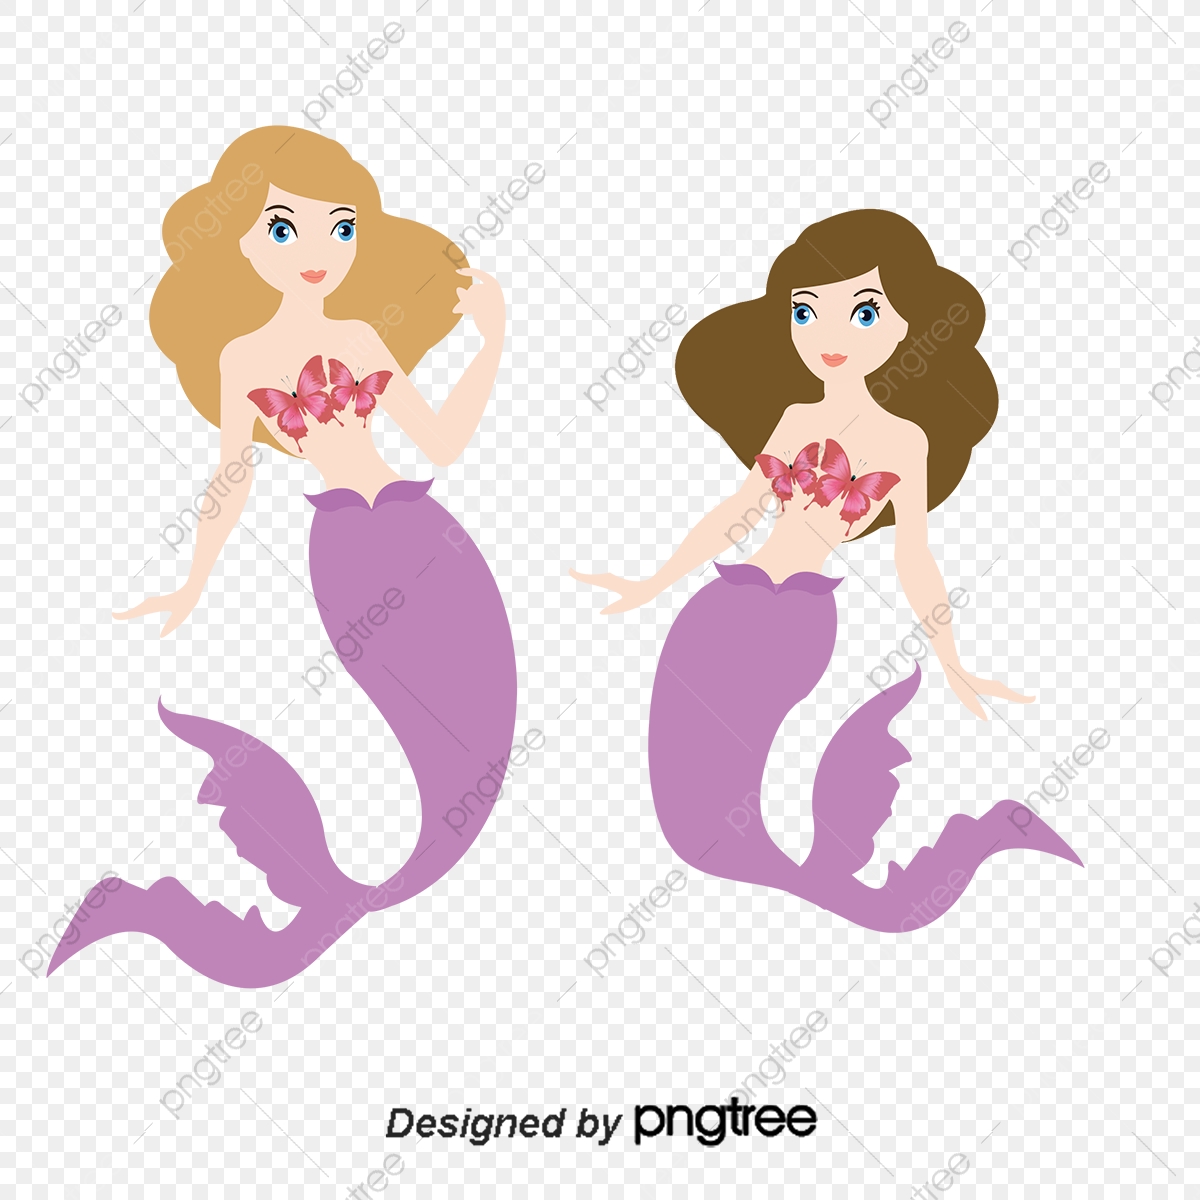 Two Mermaids, Mermaid, Cartoon, Mermaid Princess PNG.